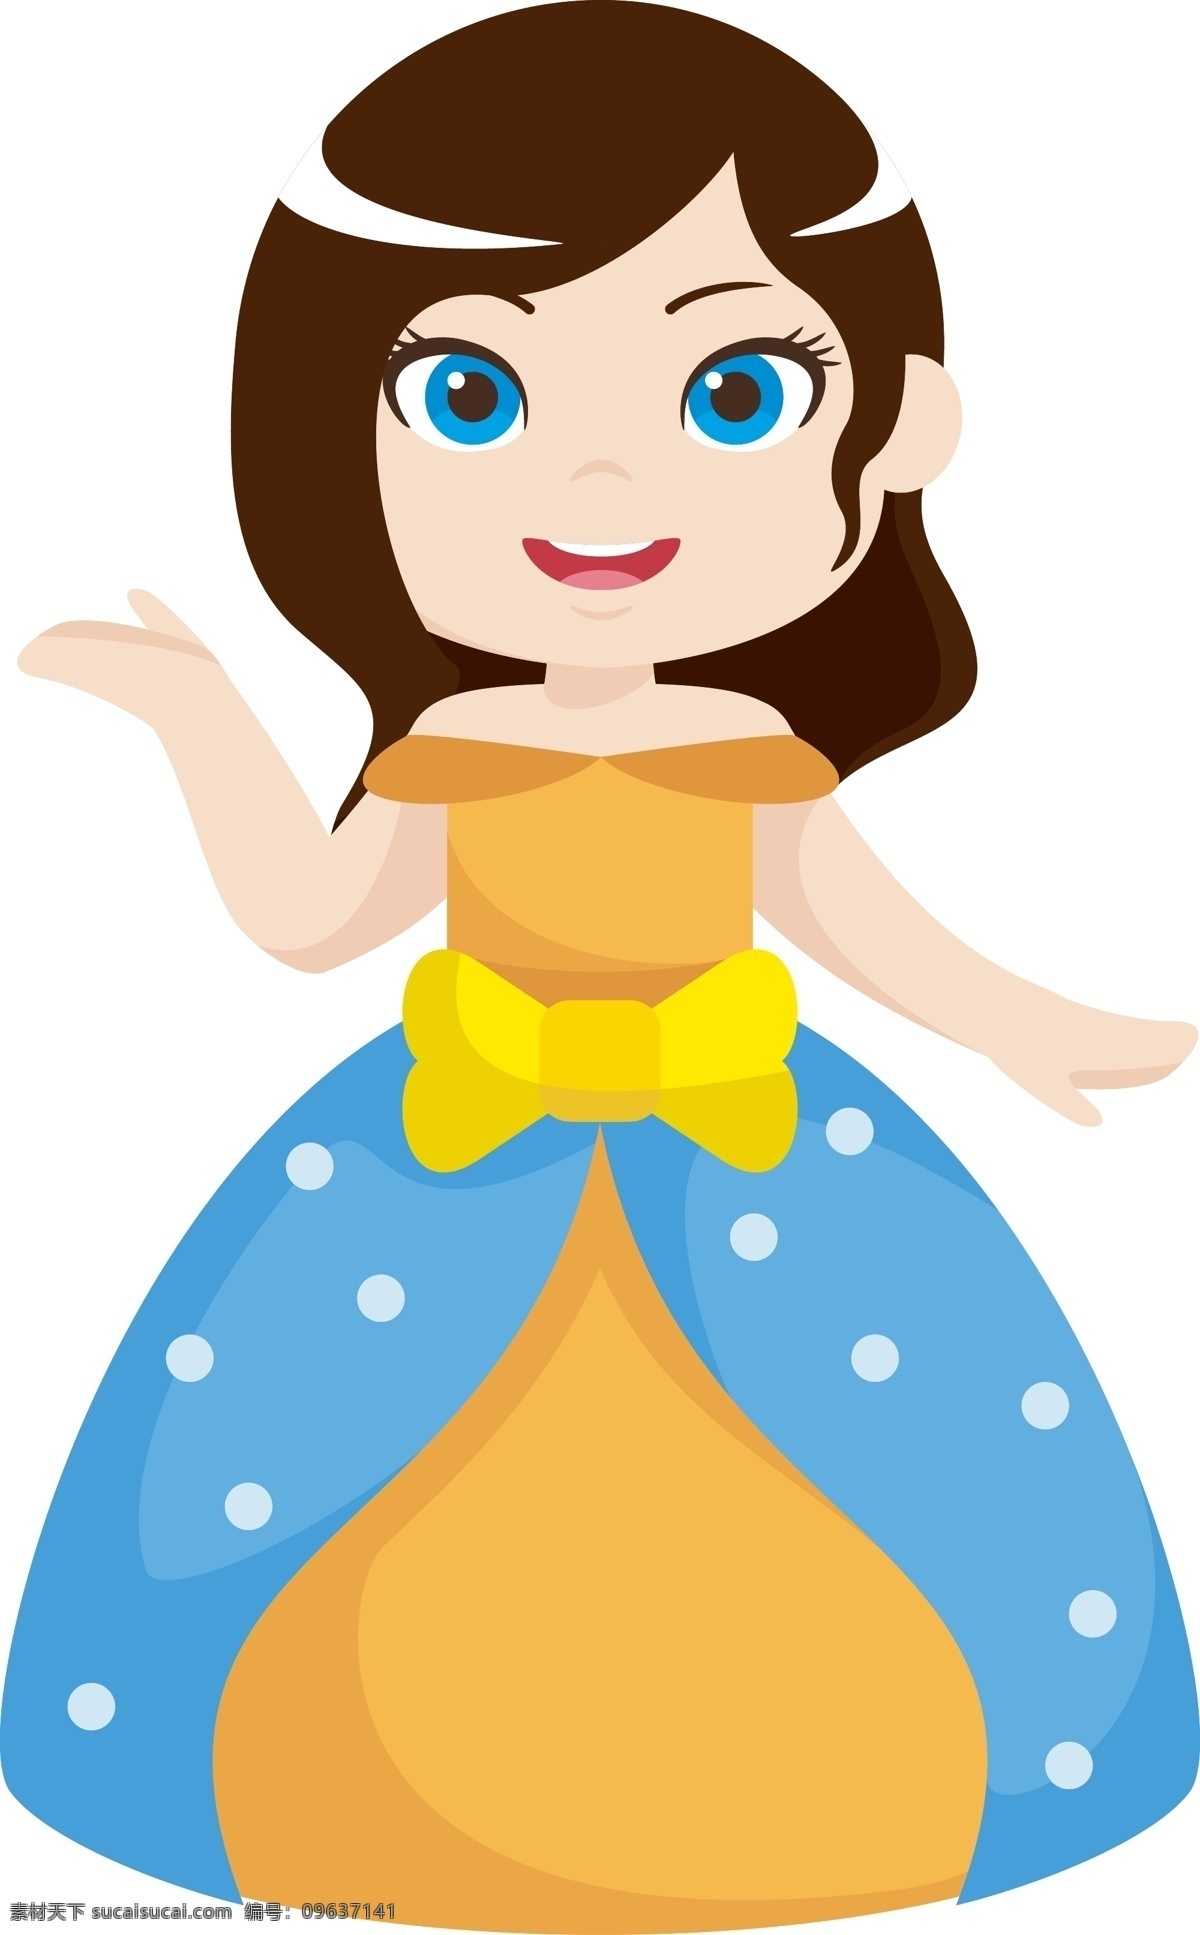 卡通 矢量 身穿 礼服 美丽 公主 卡通矢量 蓝色礼服 童话世界 公主设计 人物 裙子 童话 插画 王子 城堡 海报